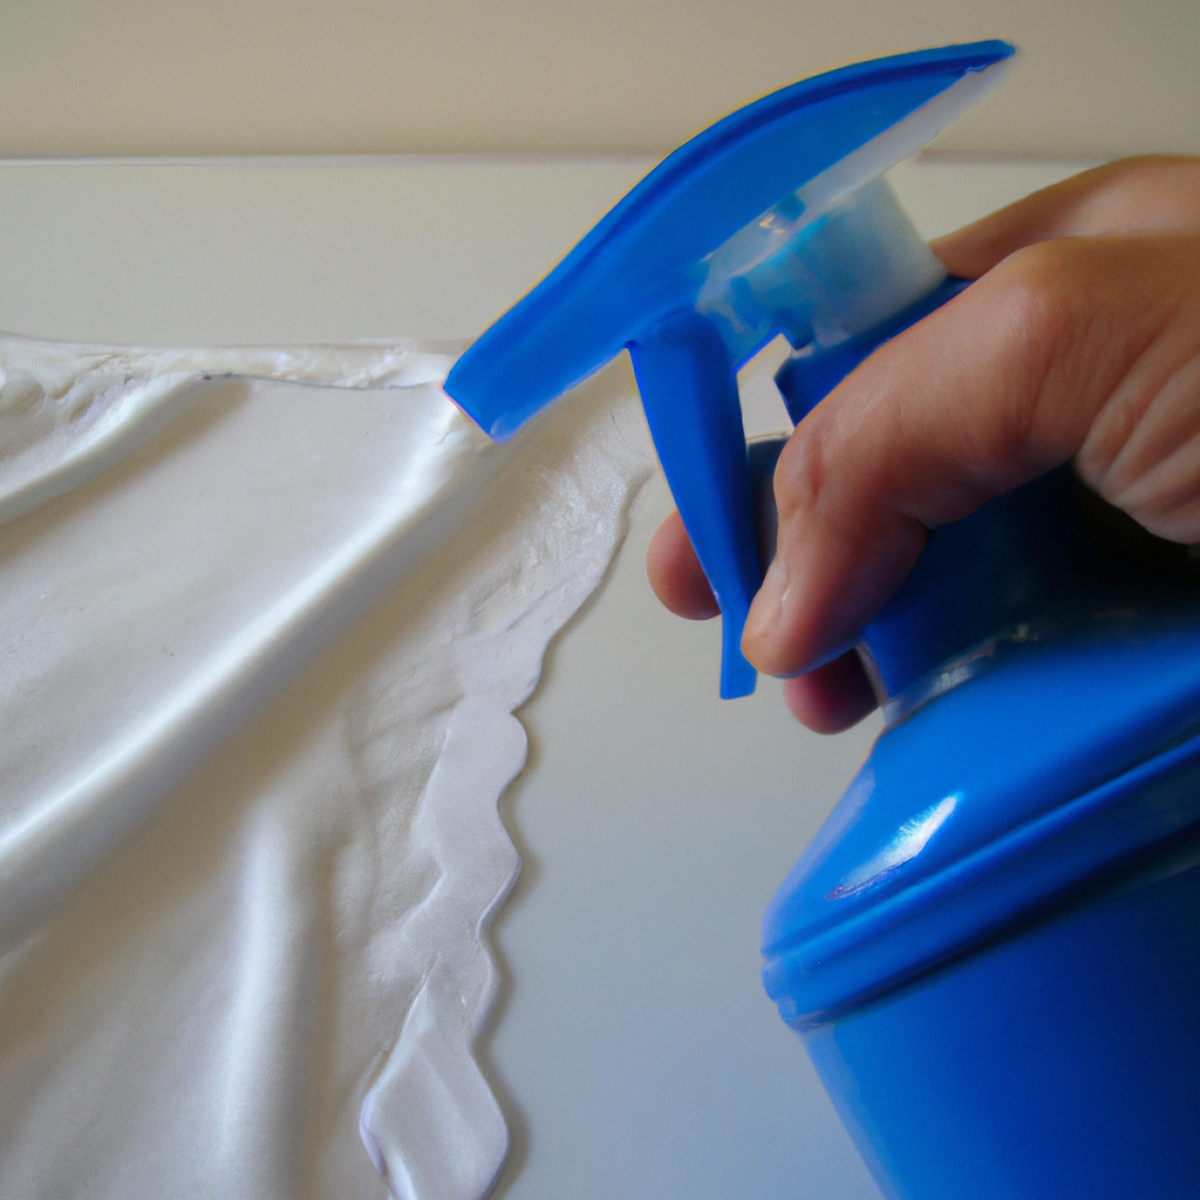 Cómo quitar pintura sintetica de la ropa